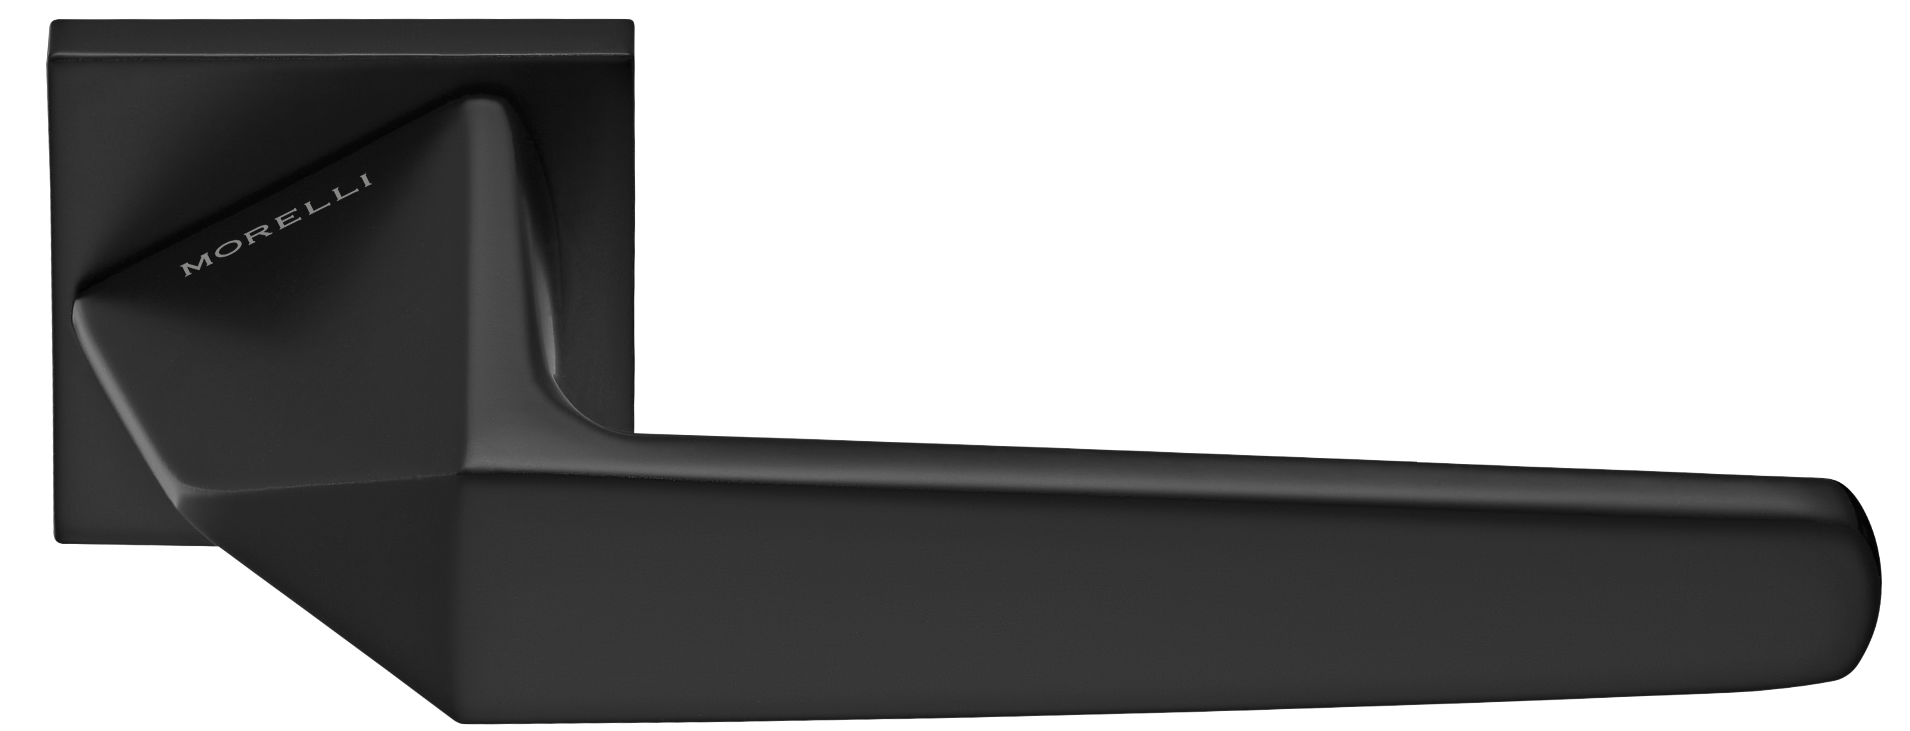 SOUK ручка дверная на квадратной розетке 6 мм, MH-55-S6 BL, цвет - черный фото купить Челябинск